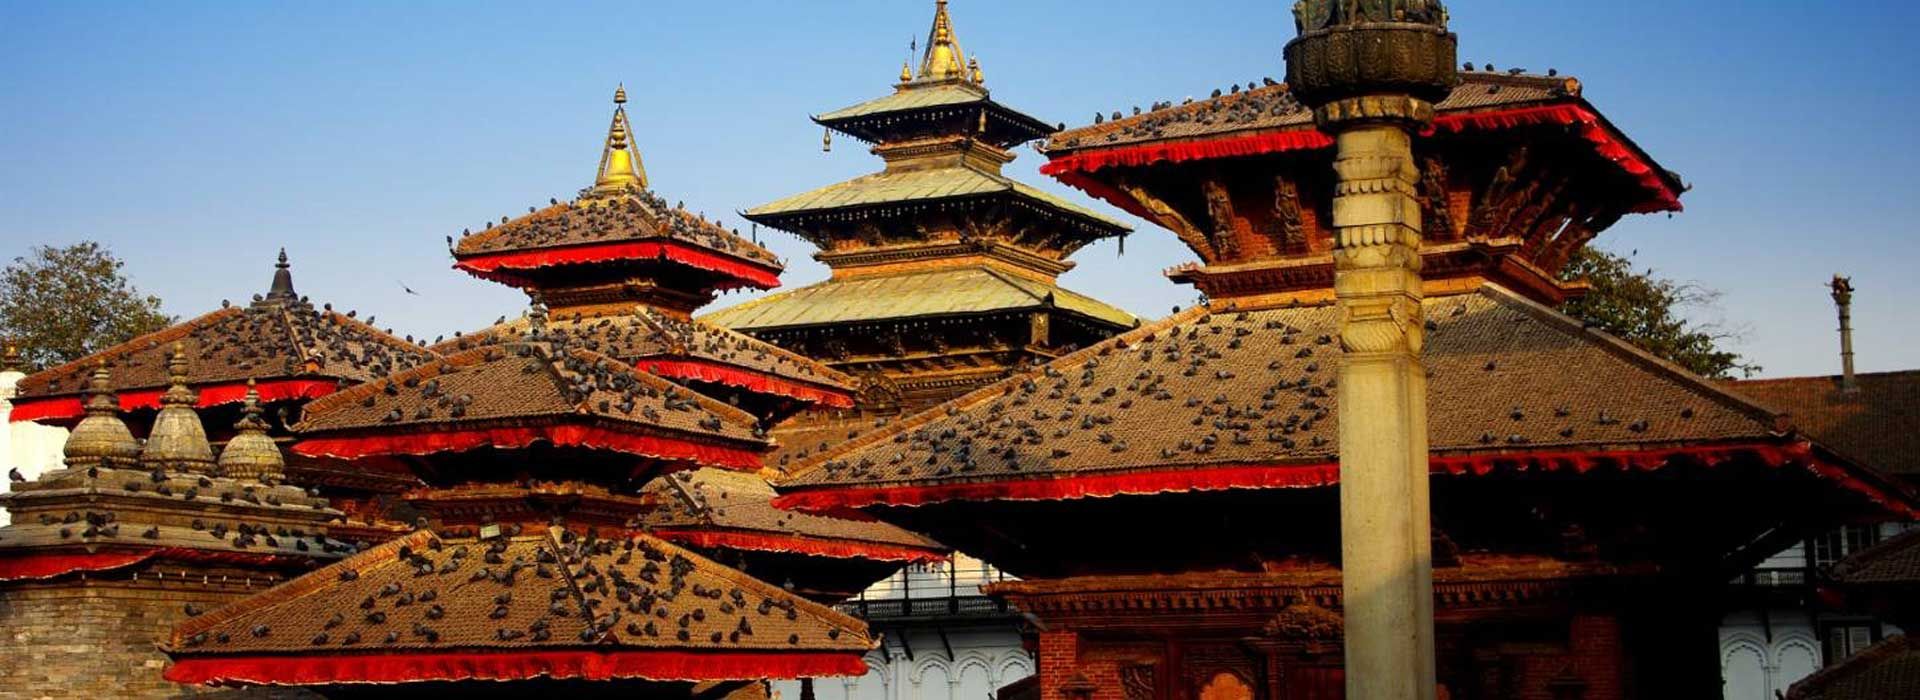 Νεπάλ "Η Μέκκα της περιπέτειας"5